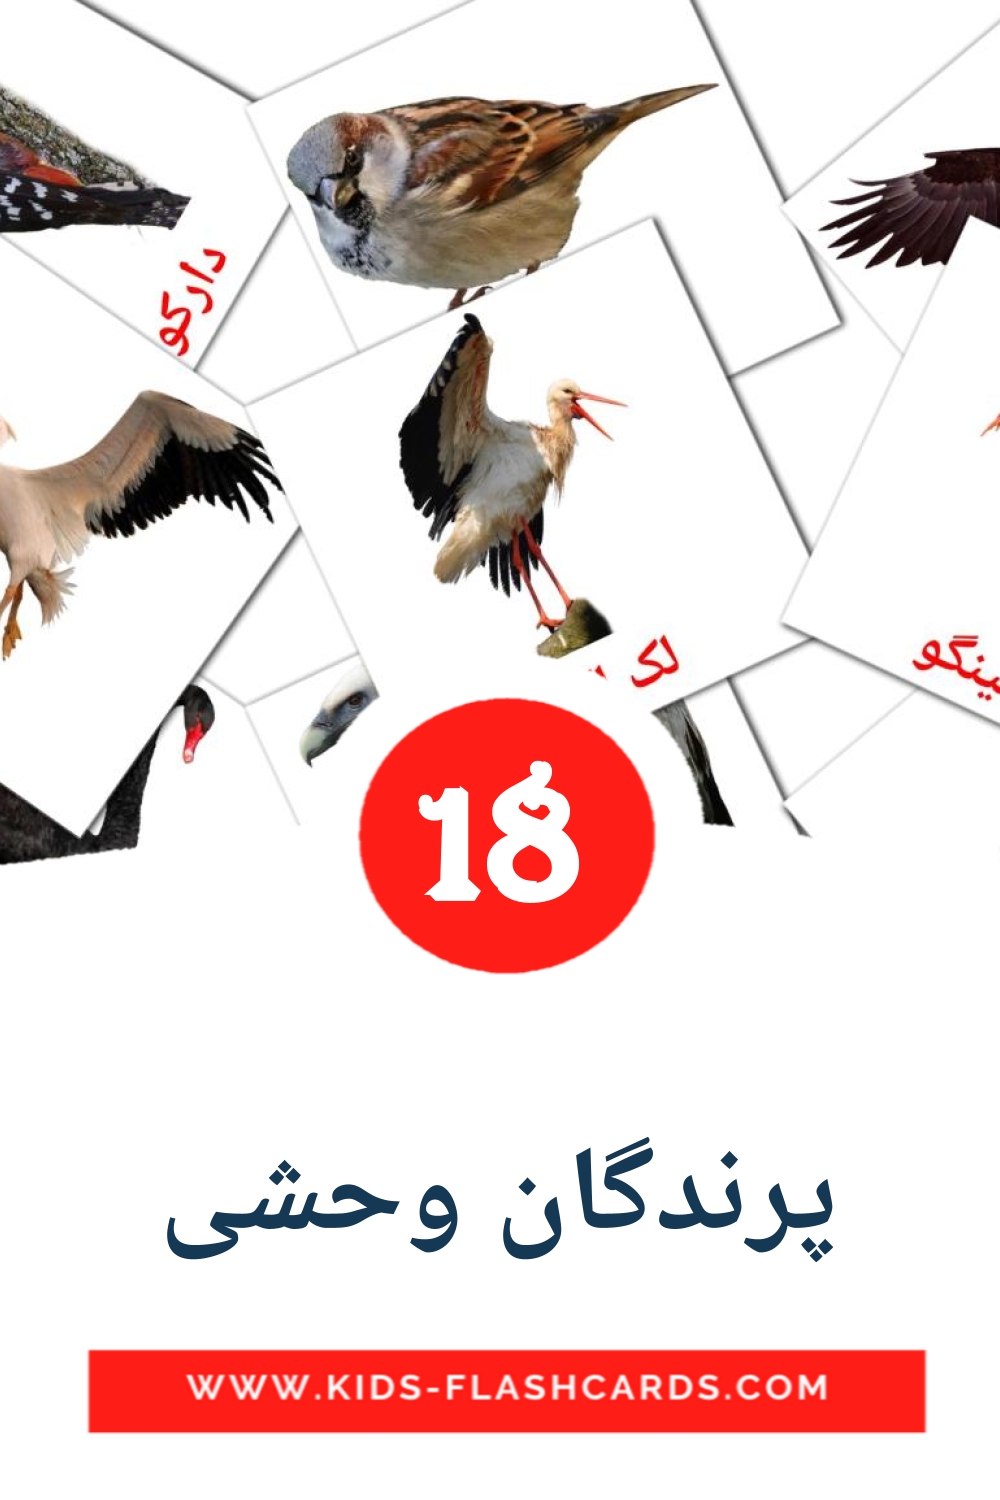 18 cartes illustrées de پرندگان وحشی pour la maternelle en persan